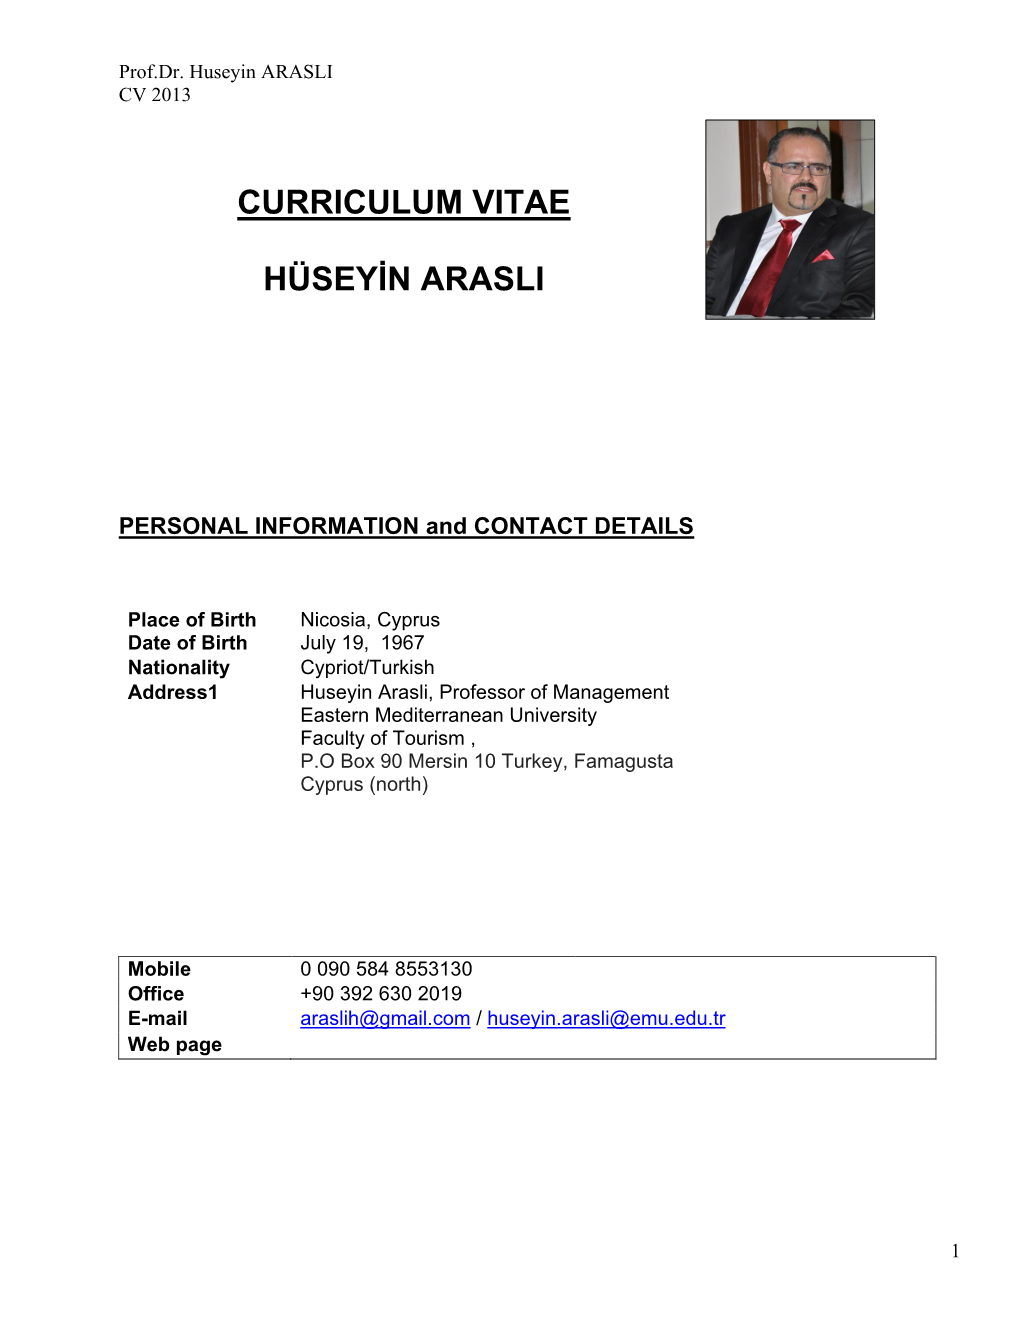 Huseyin ARASLI CV 2013